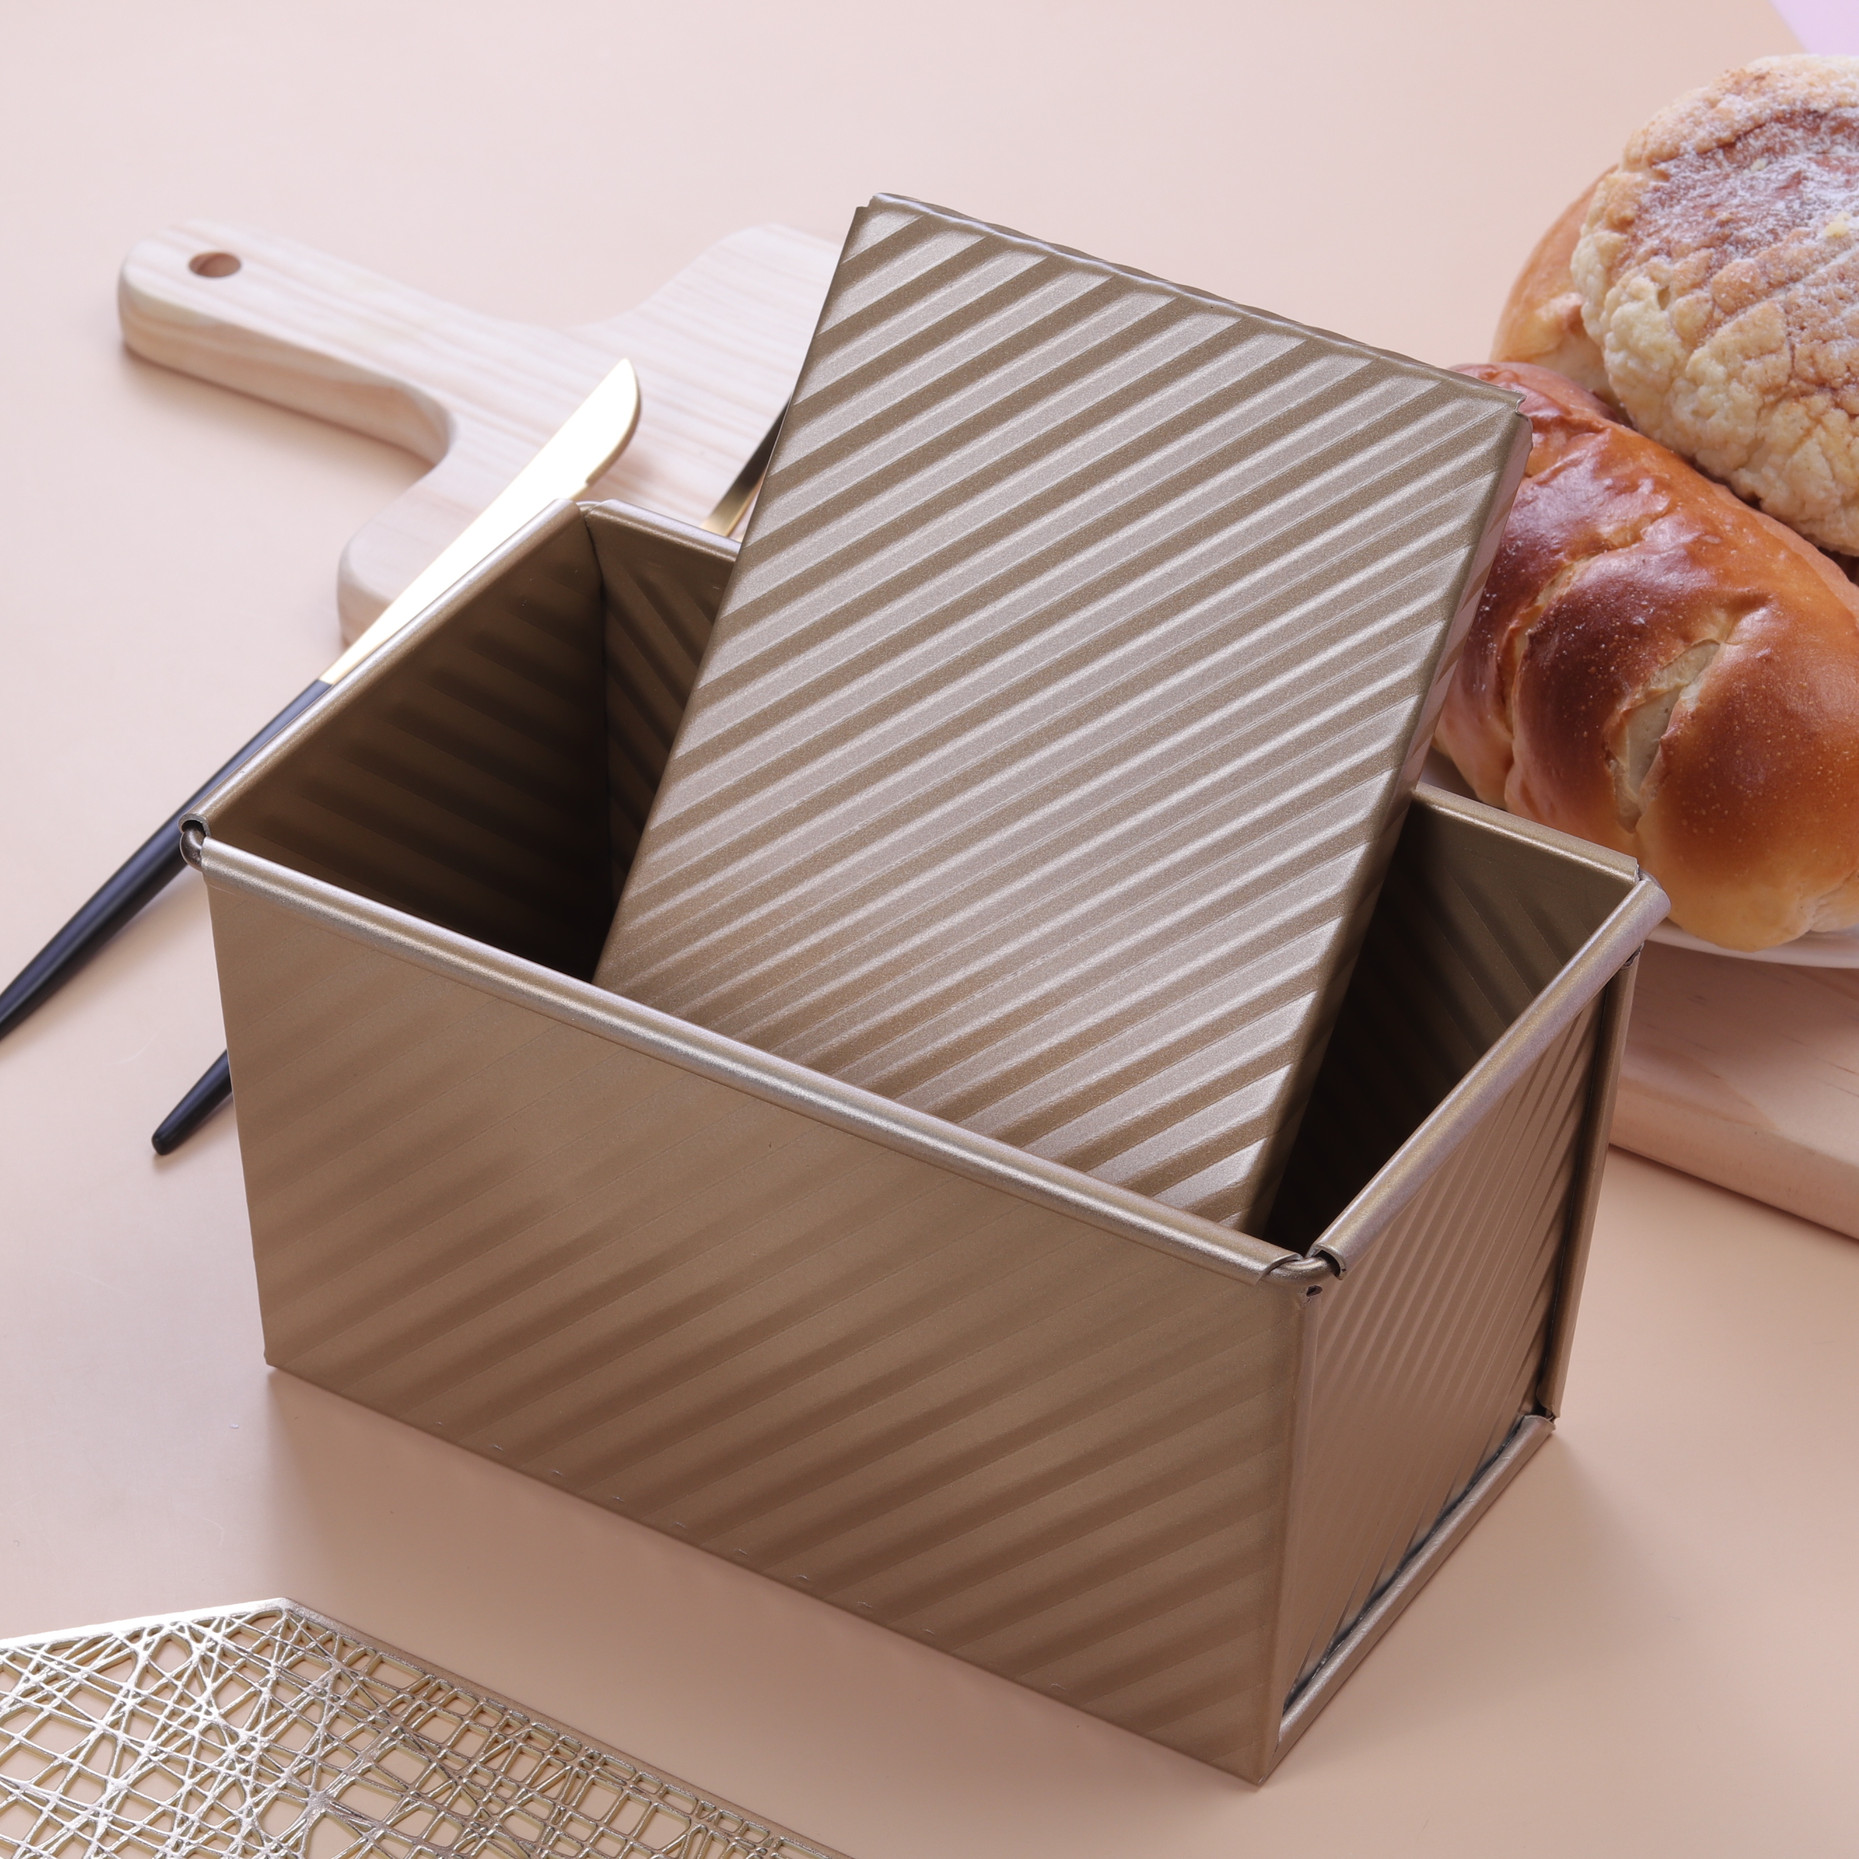 金色不沾波纹土司模具吐司盒450g带盖面包模子烤箱用烘焙模具家用